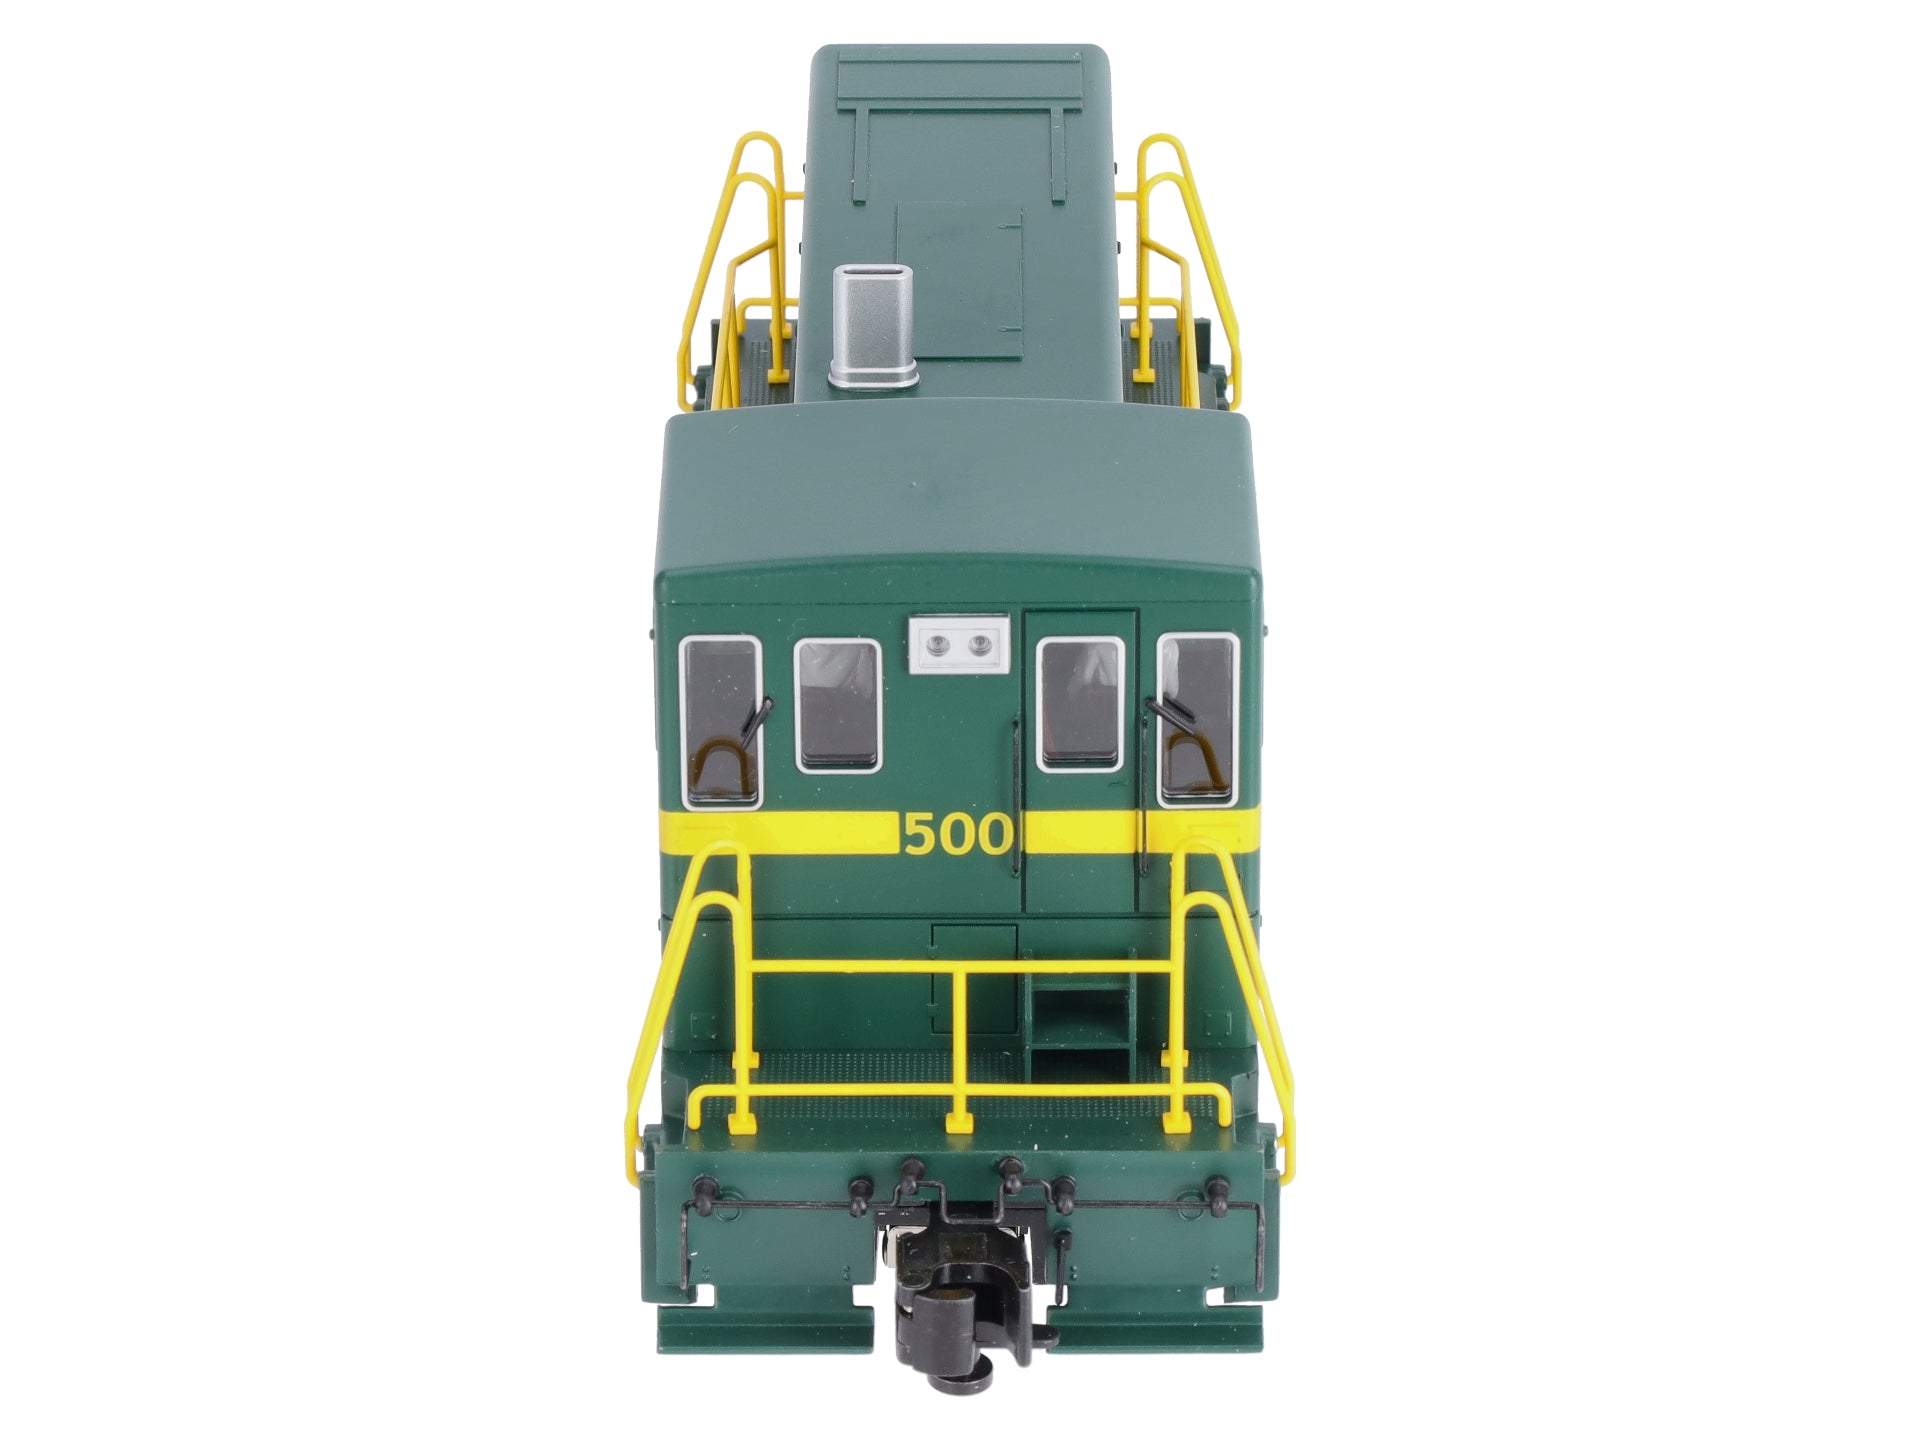 Rutland #500- GE 70-Ton Scale Diesel [23504] - $429.95 : Bachmann